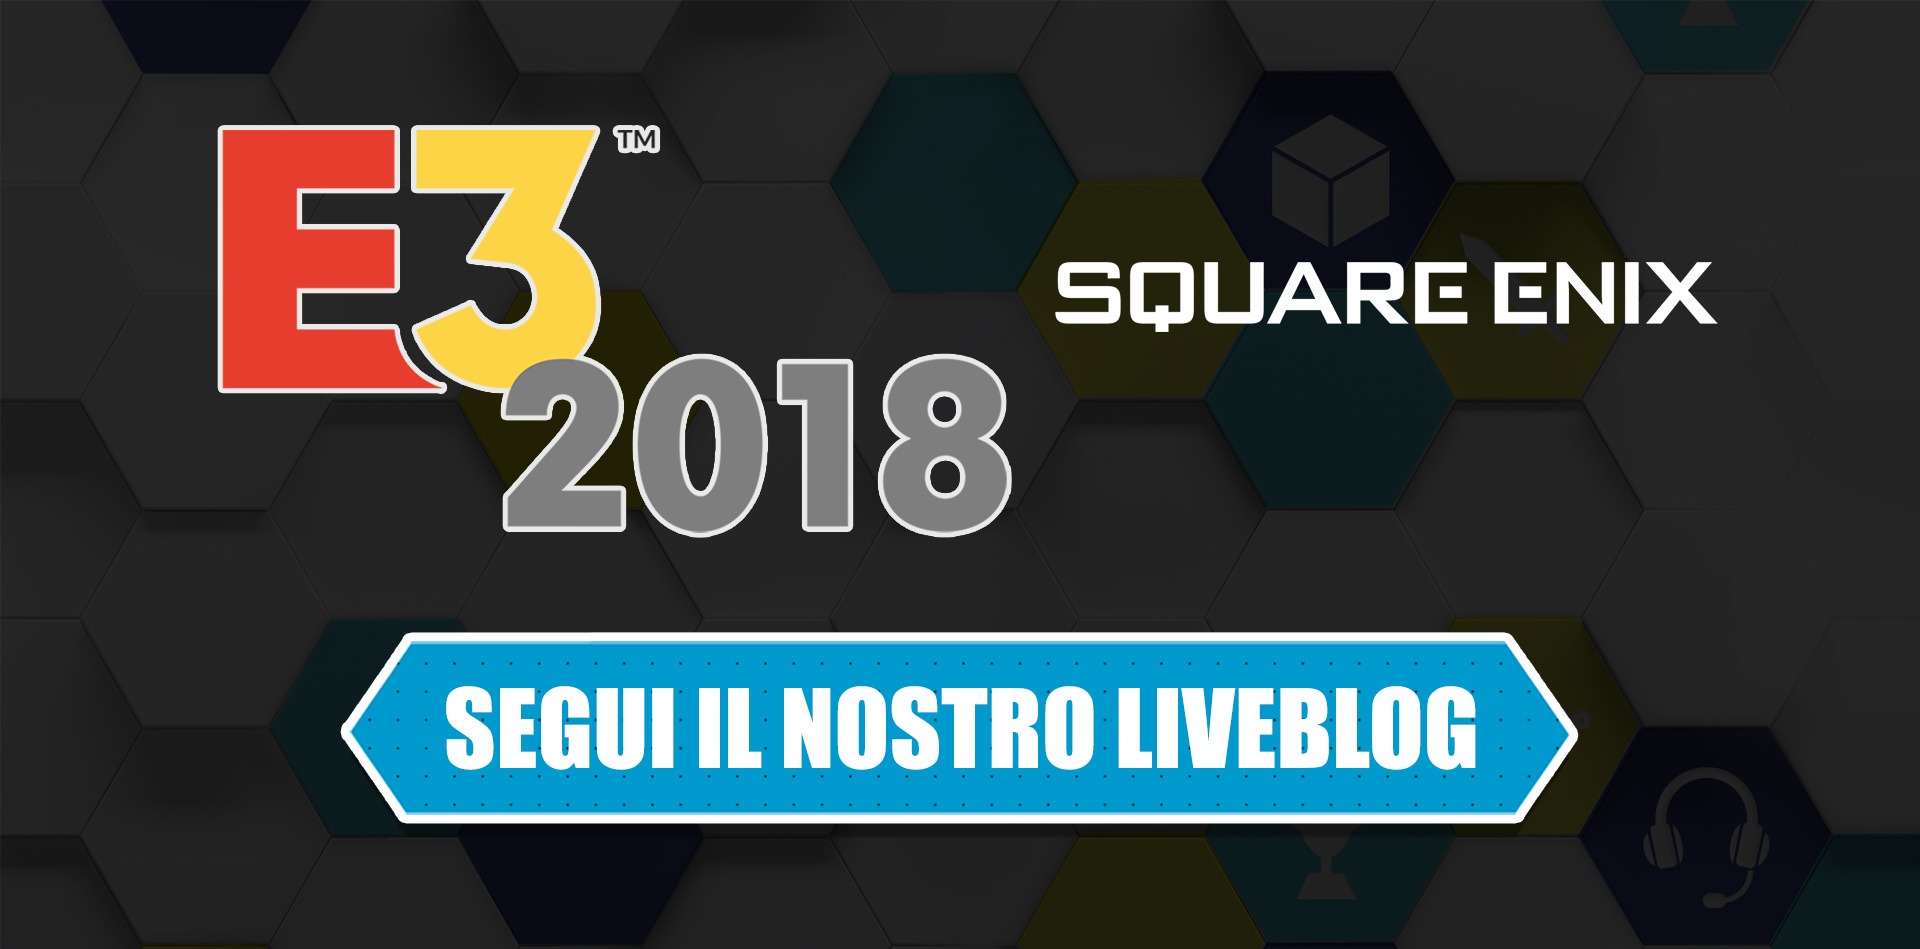 E3 2018: segui il liveblog della conferenza Square Enix l'11 giugno dalle 19.00